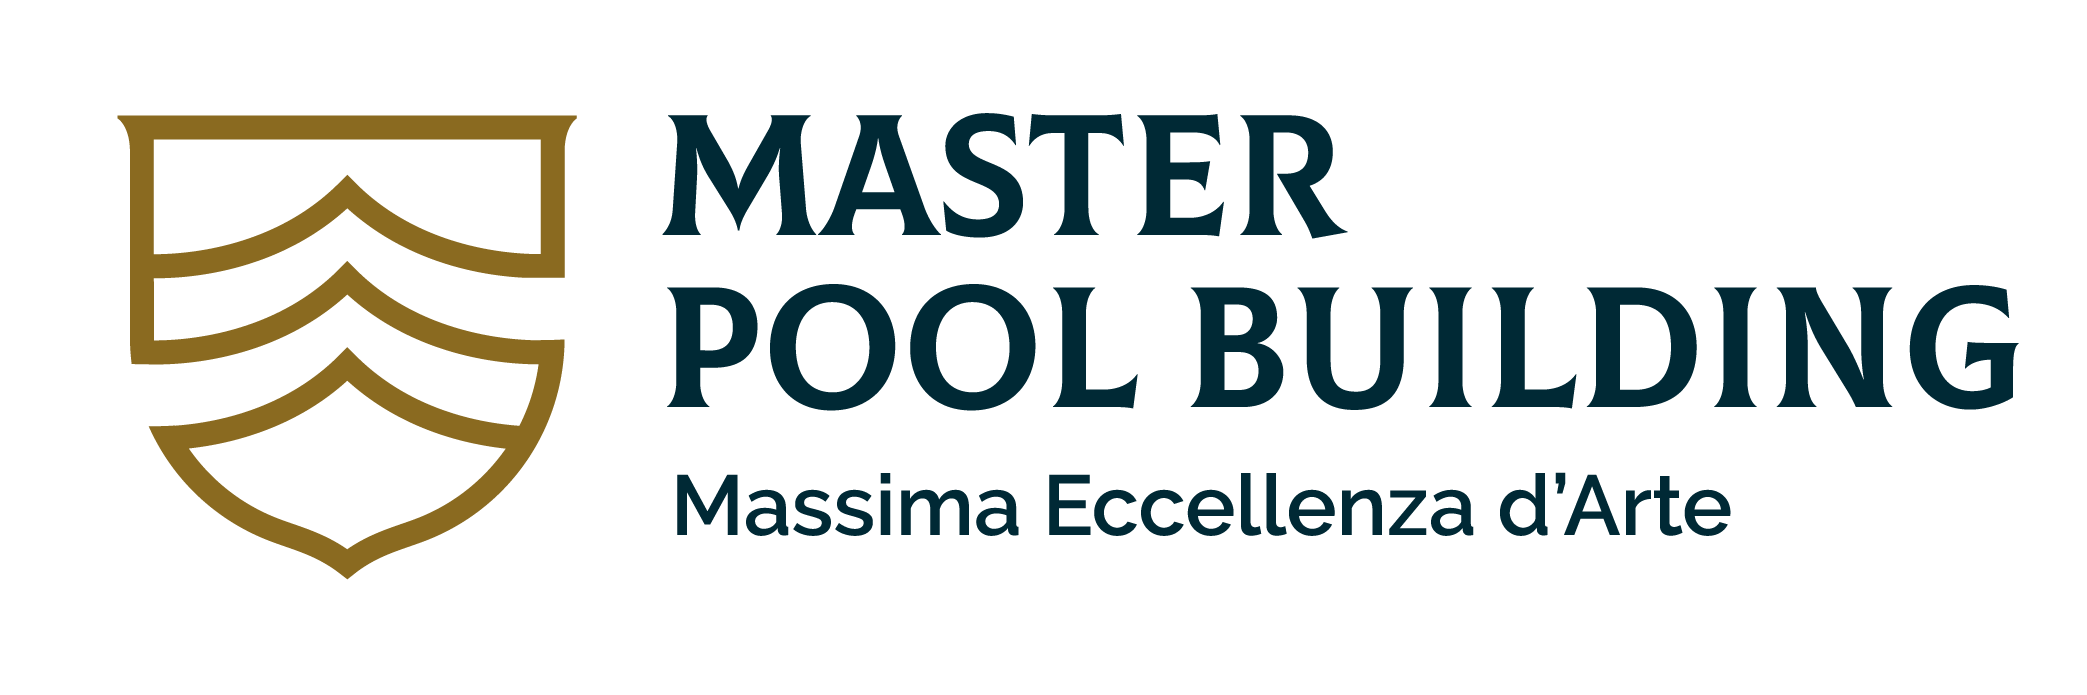 Master Pool Building - Il Percorso per i Professionisti delle Piscine